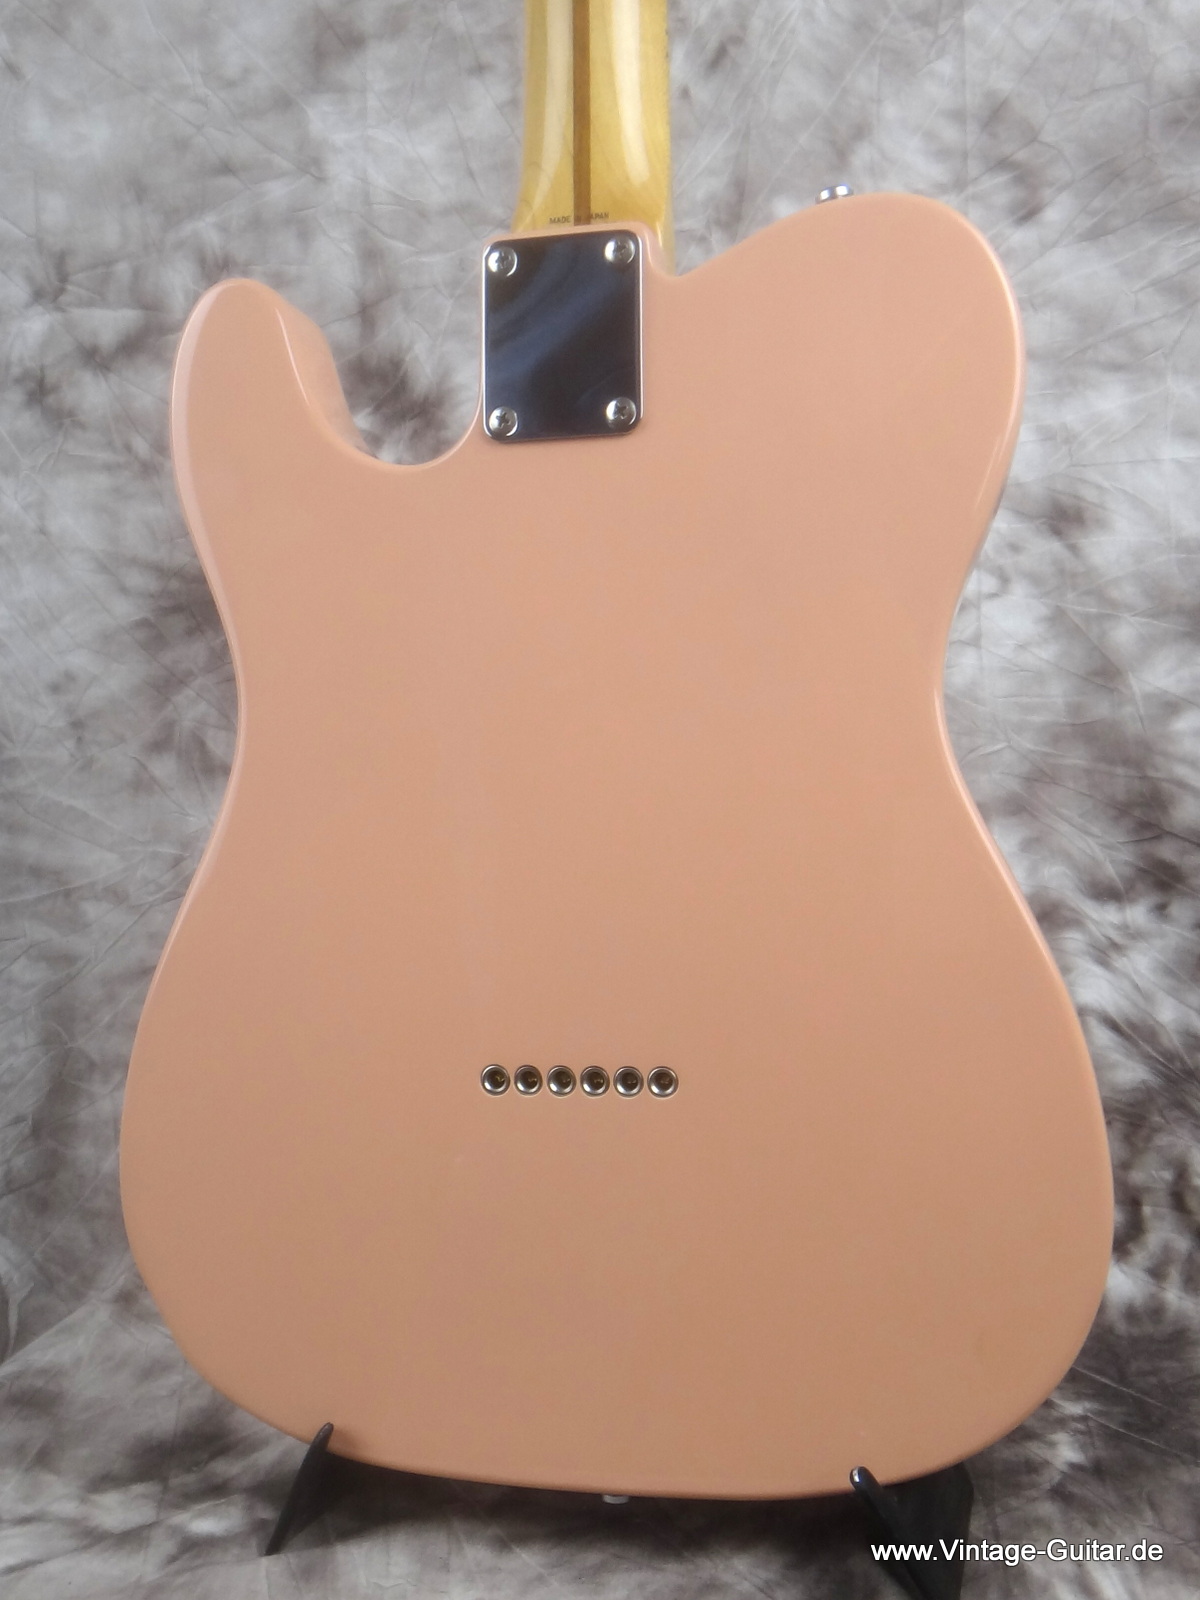 Fender_Telecaster-50s-Resissue-shell-pink-003.JPG